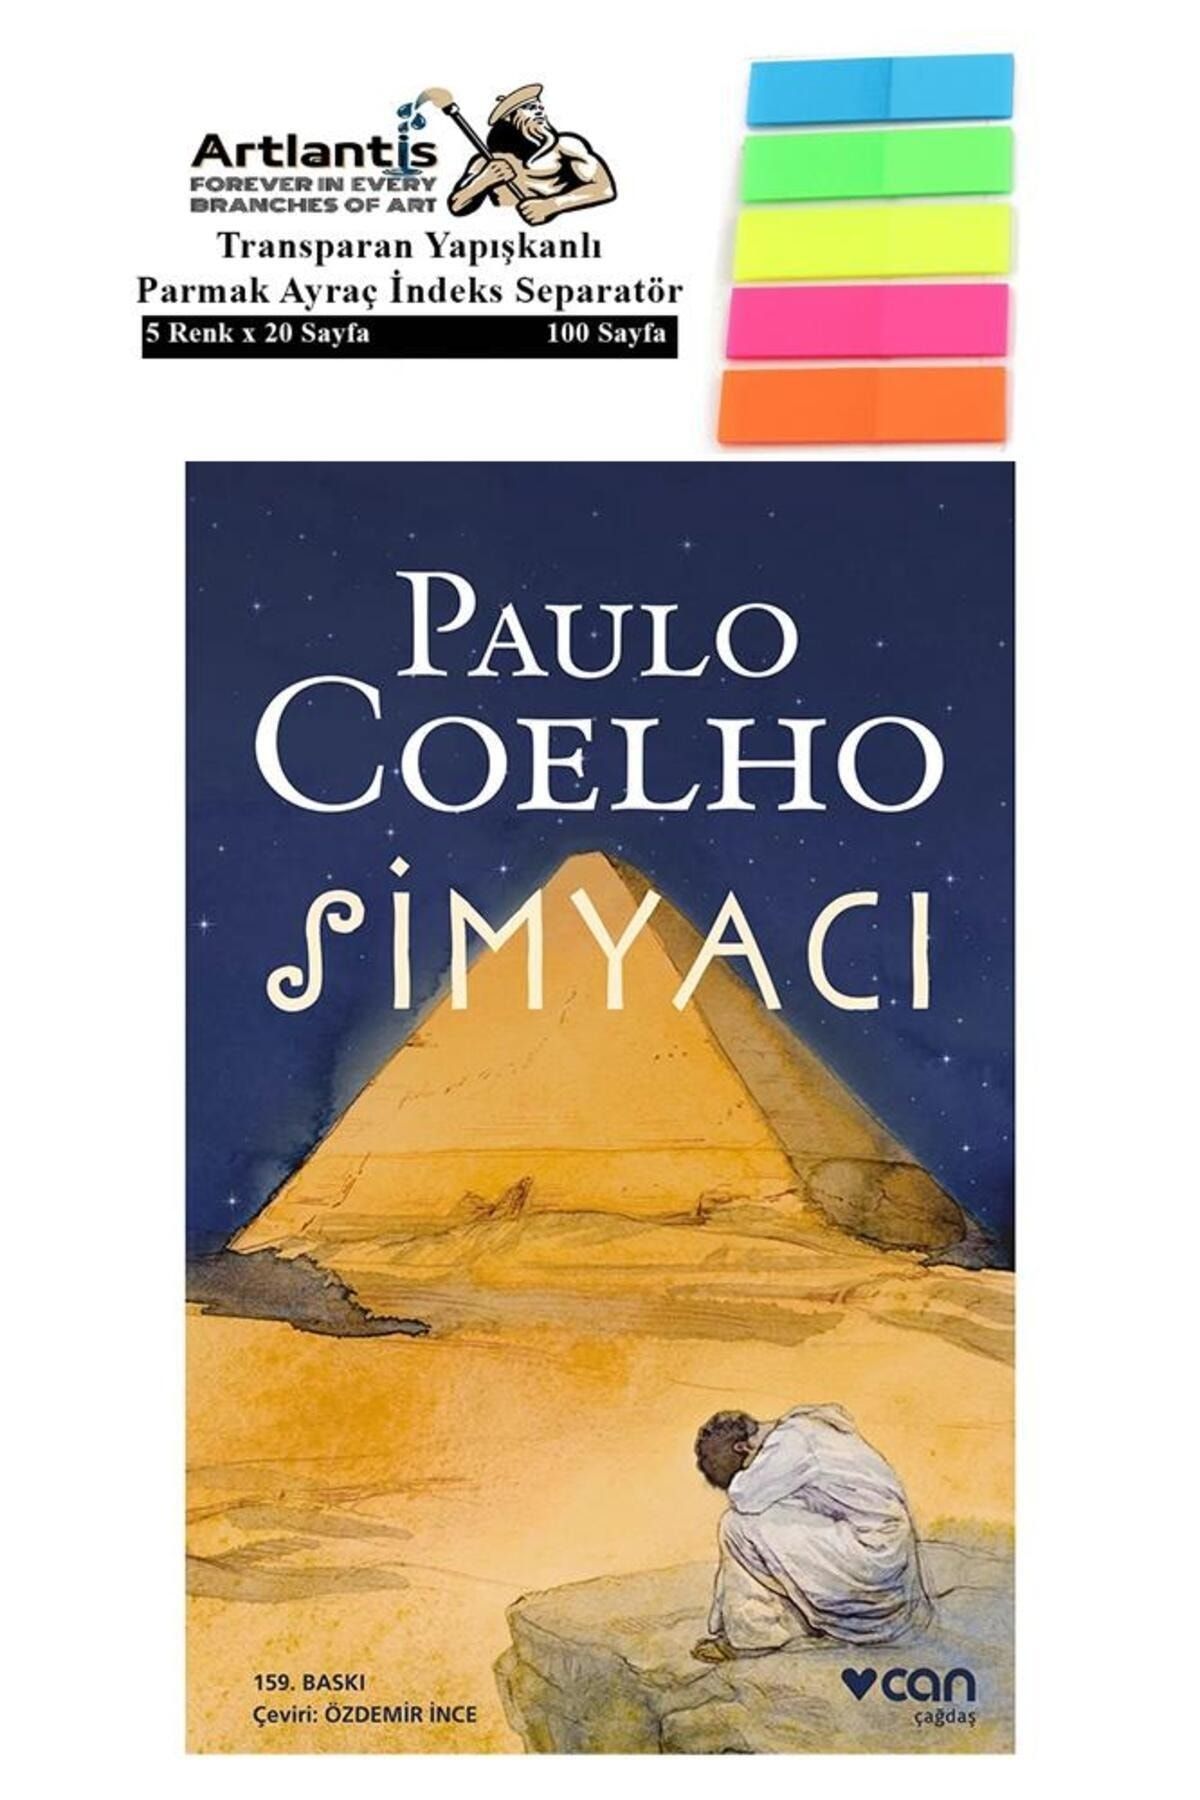 Artlantis Simyacı Paulo Coelho 188 Sayfa Karton Kapak 1 Adet Fosforlu Transparan Kitap Ayraç 1 Paket